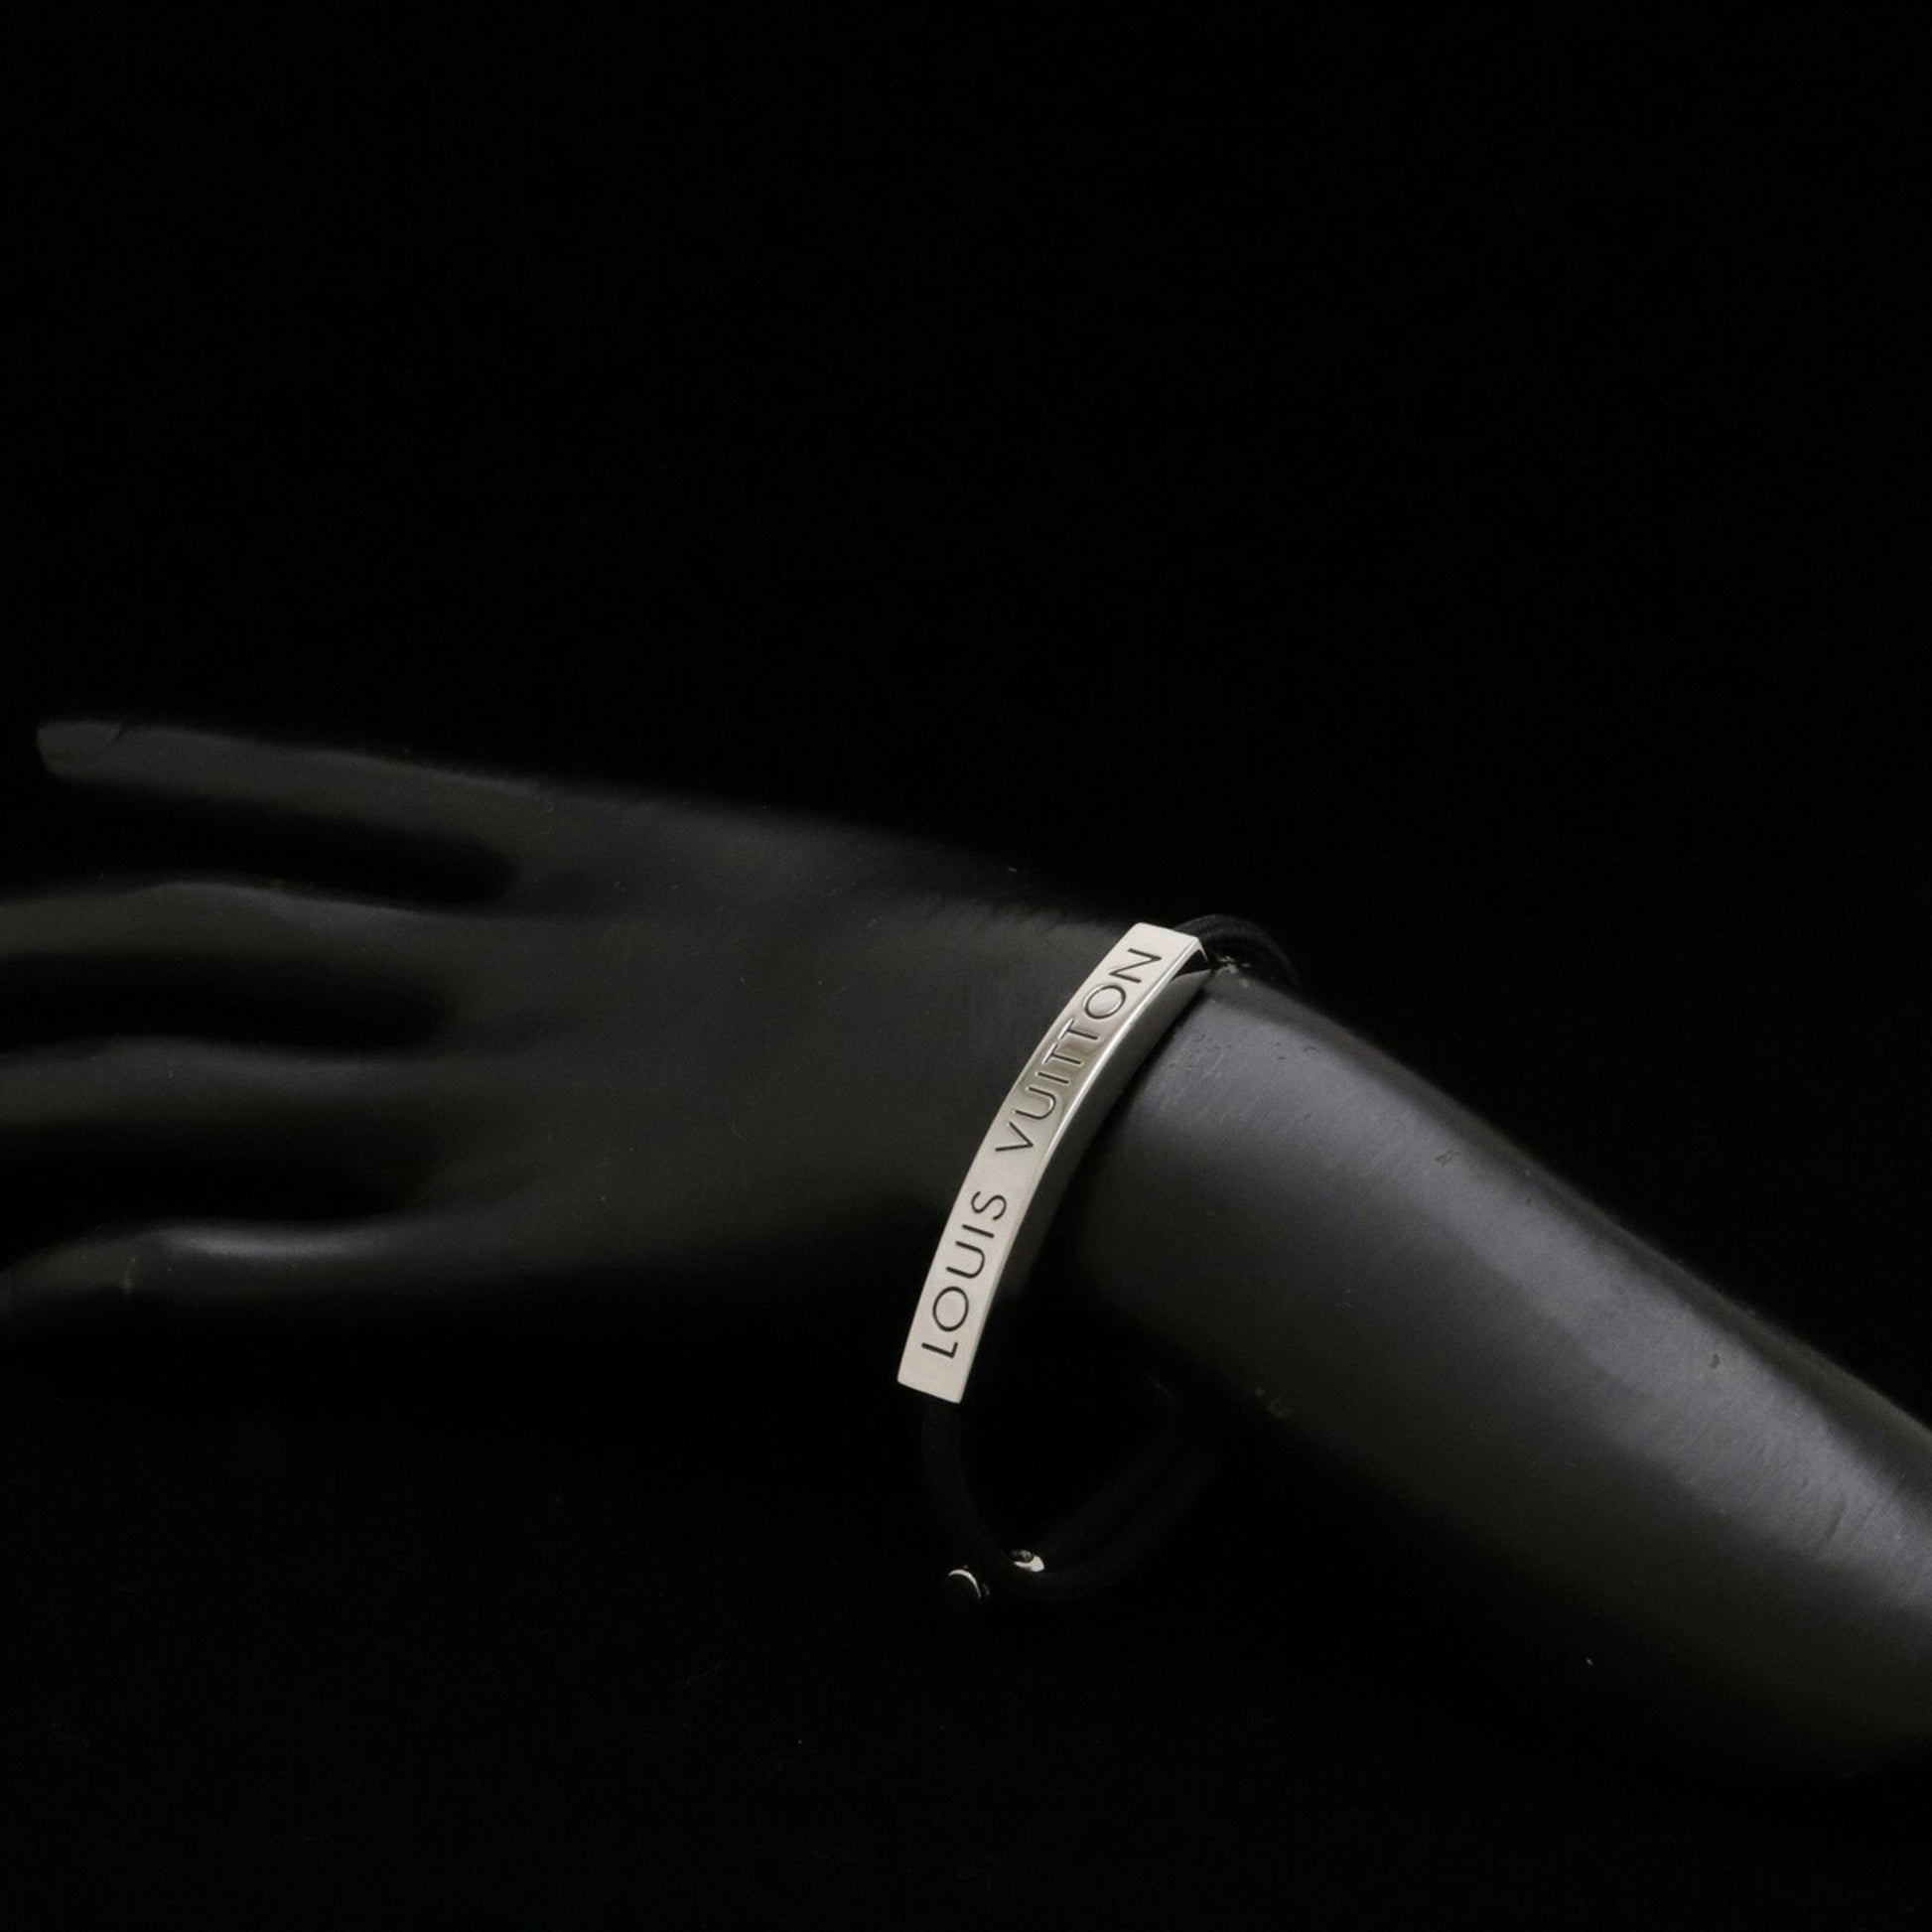 Shop Louis Vuitton Space lv bracelet (LV SPACE BRACELET, M00273